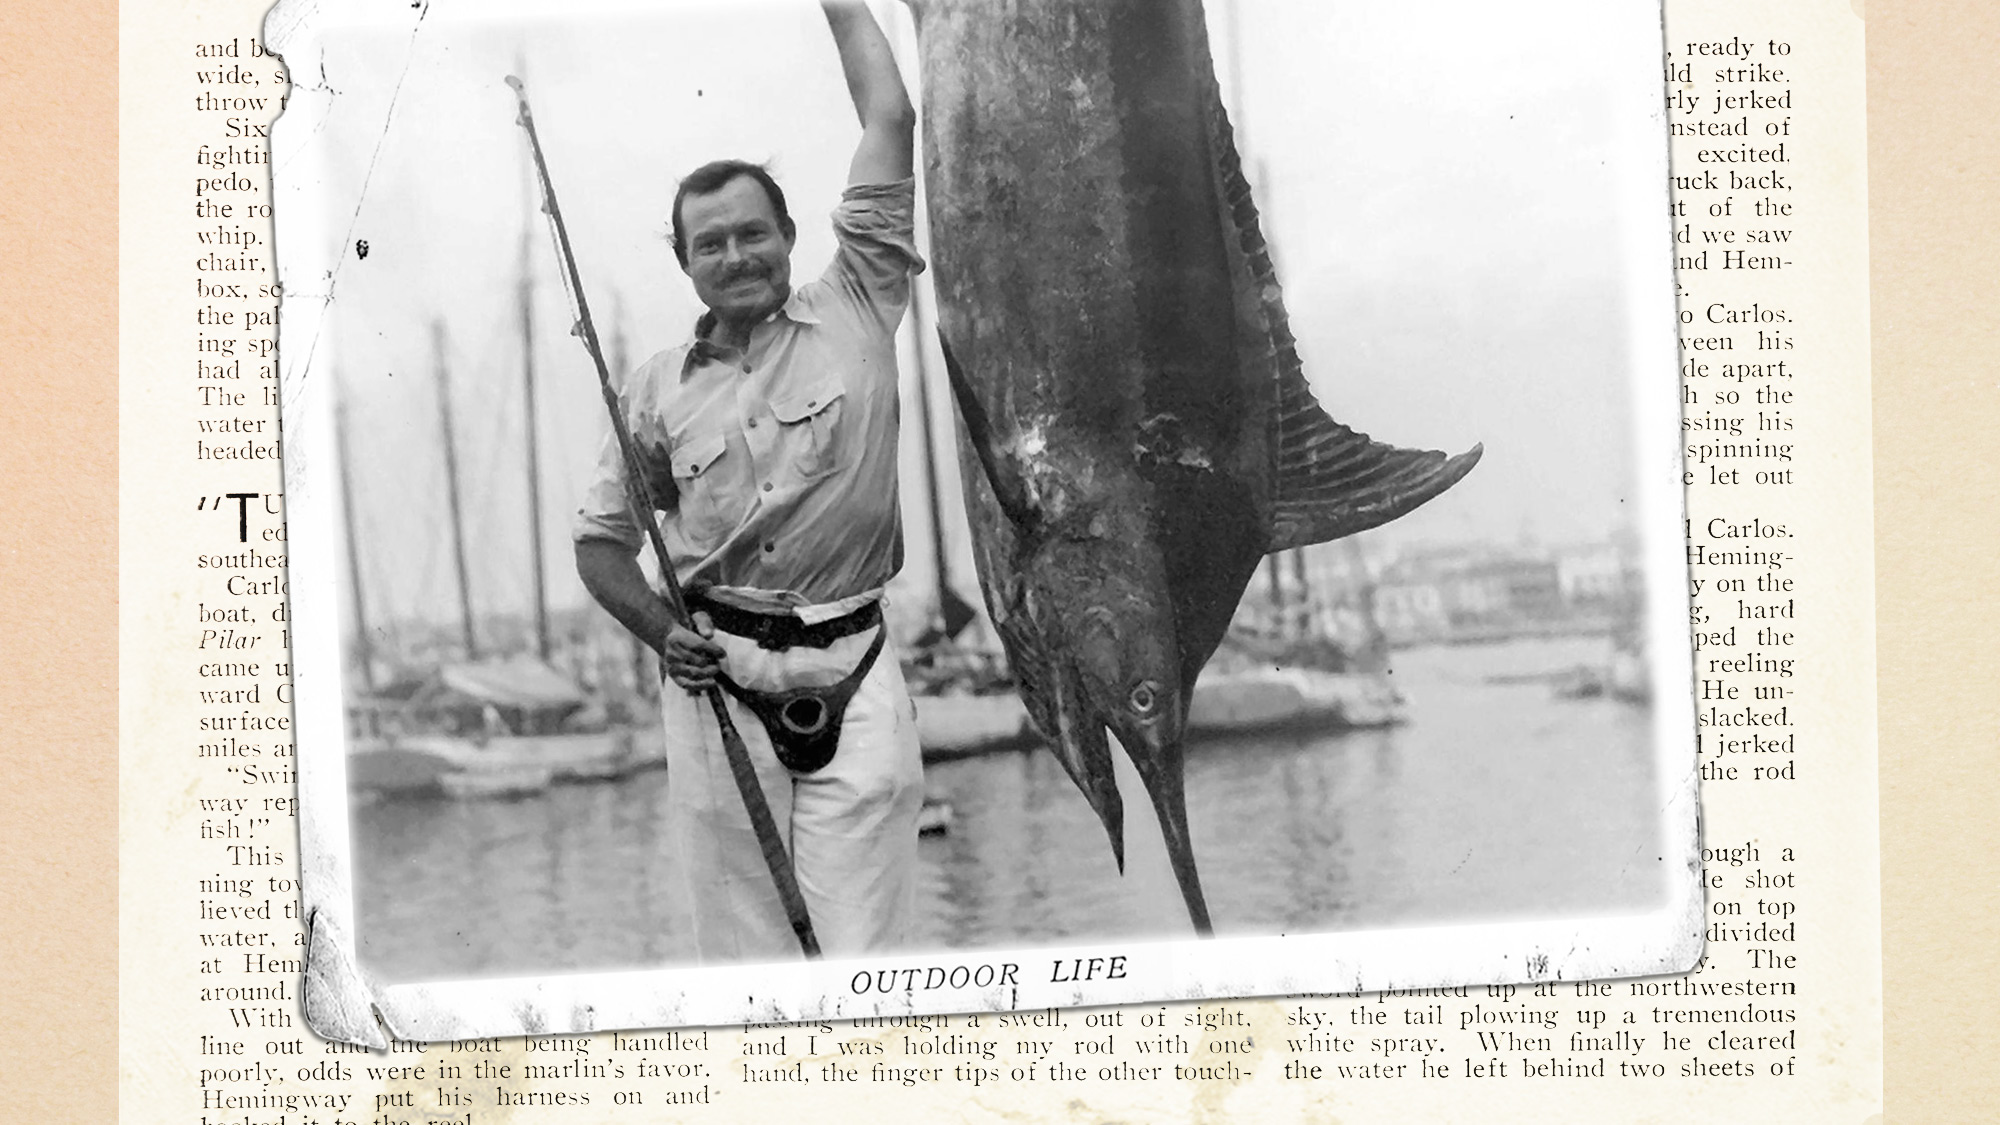 Hemingway in Cuba: Fighting Sharks and Big Marlin